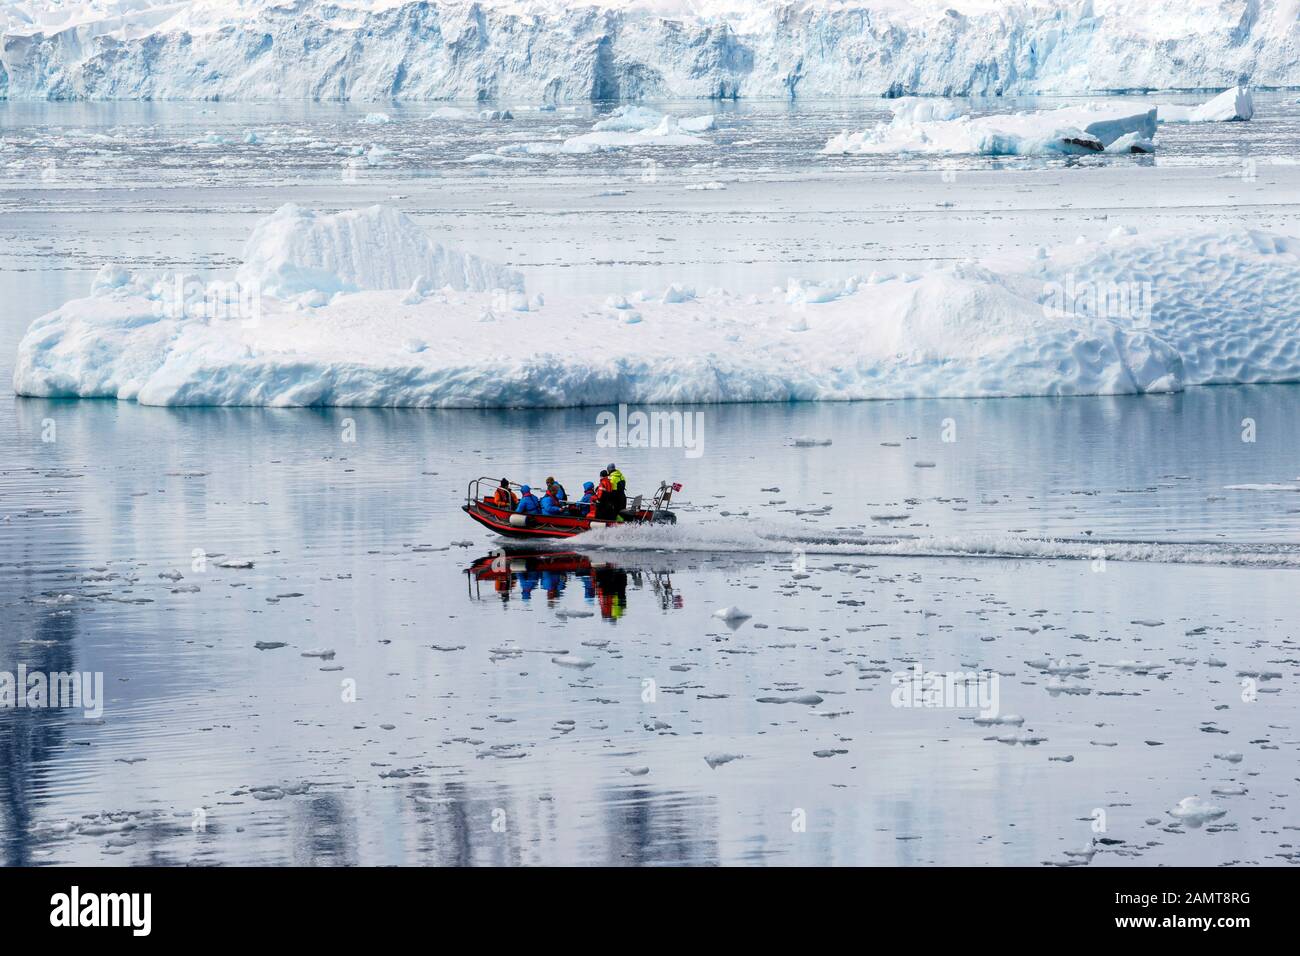 Antarktis. Touristen in einem kleinen Landungsboot in der Nähe eines kleinen Gletschers. Nicht identifizierbare Personen. Stockfoto